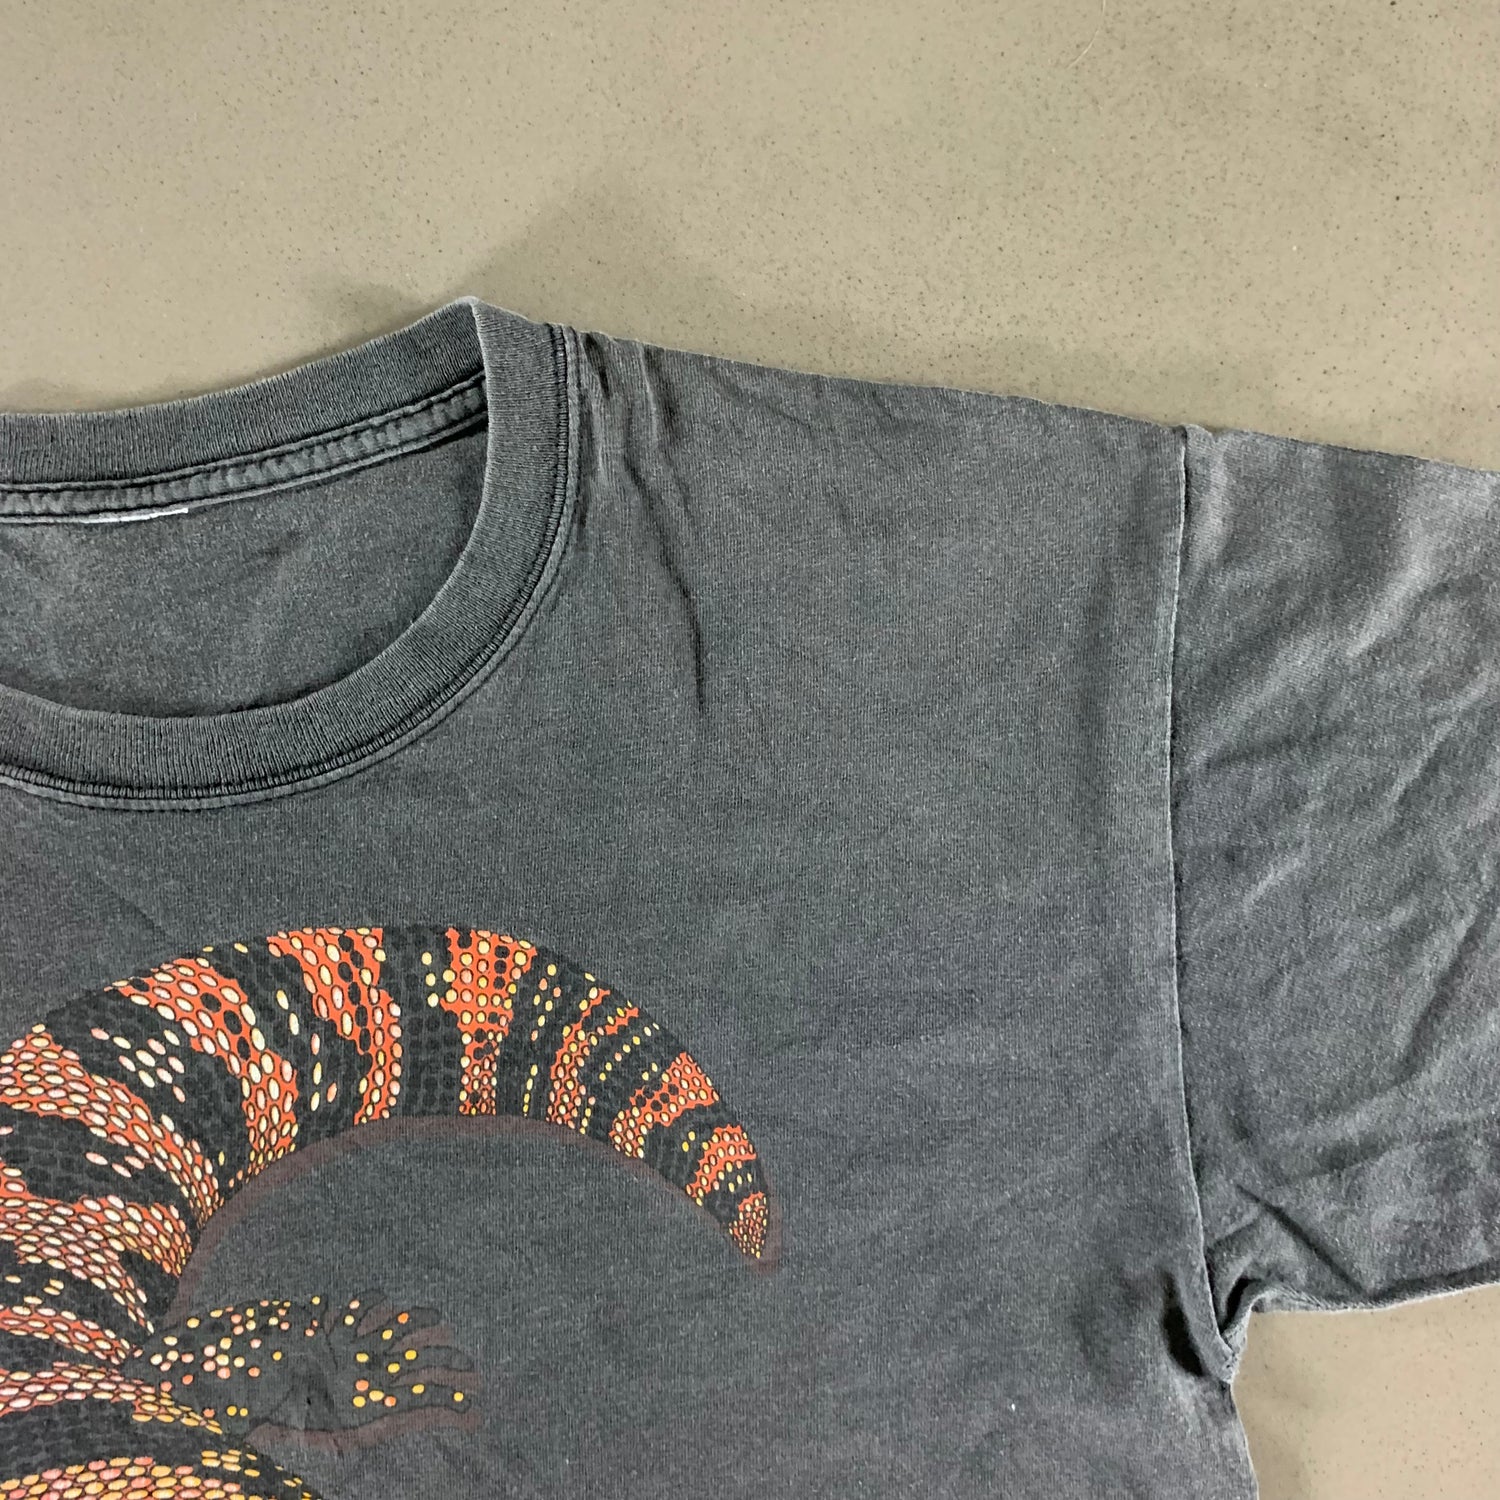 Vintage 1990s Dragon T-shirt size XL